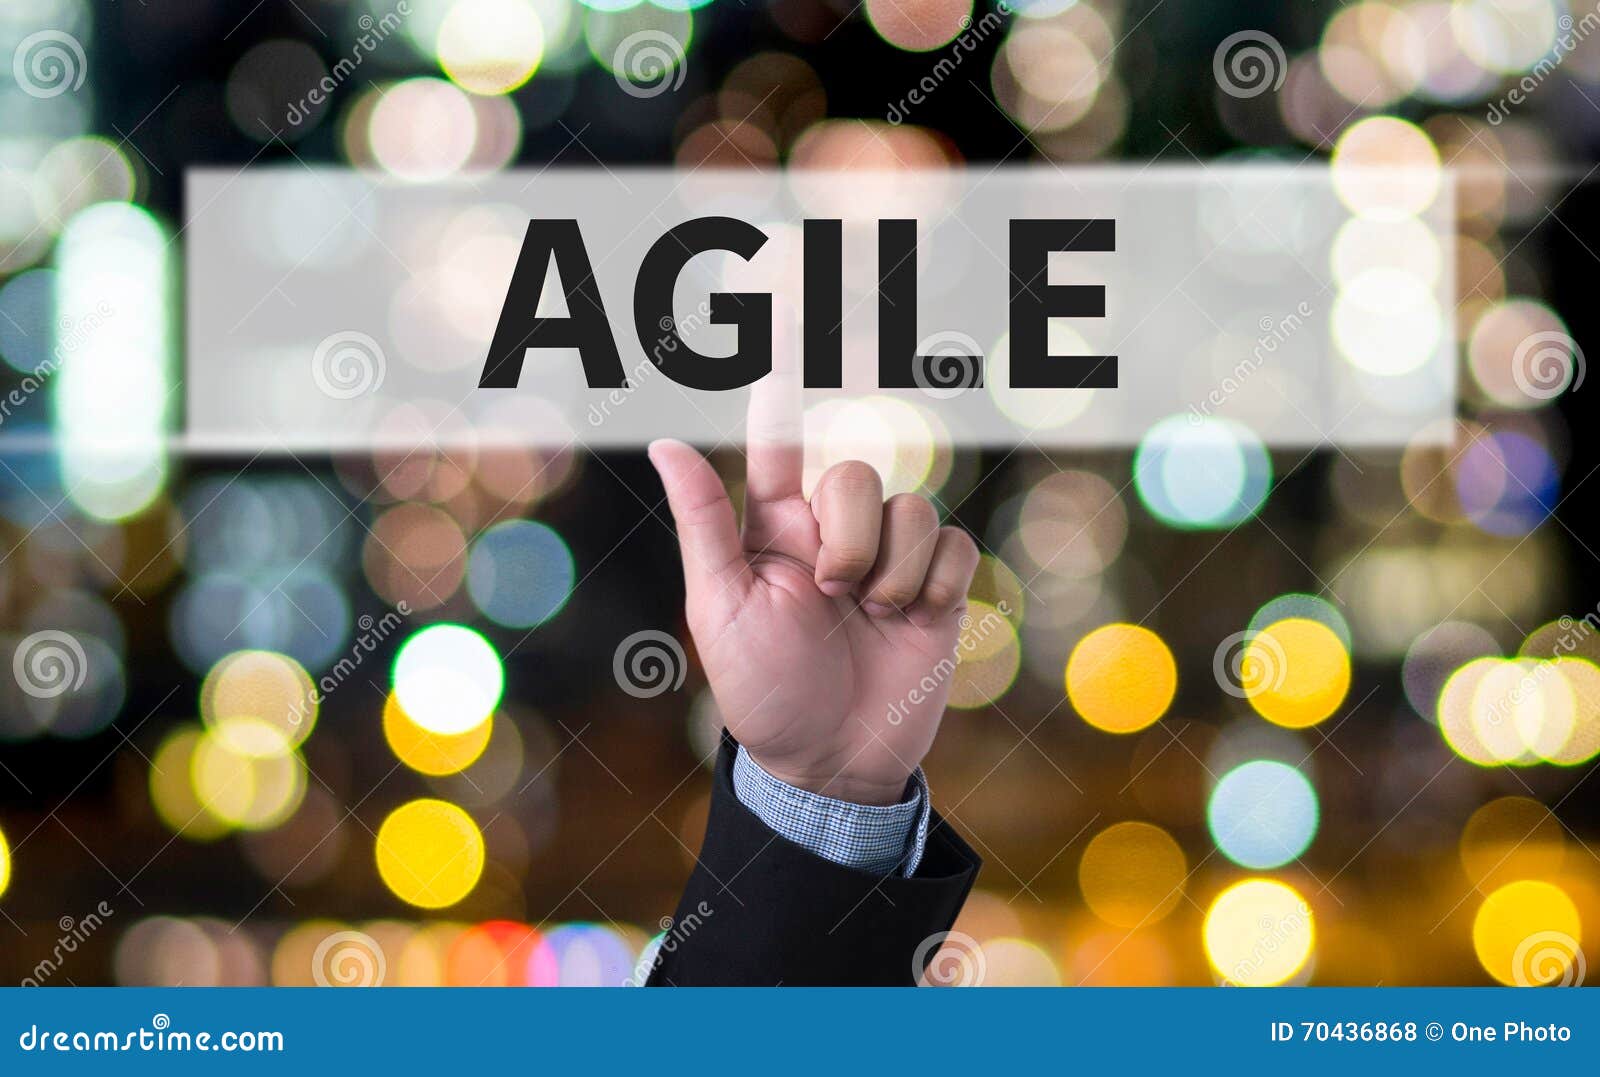 agile agility nimble quick fast concept